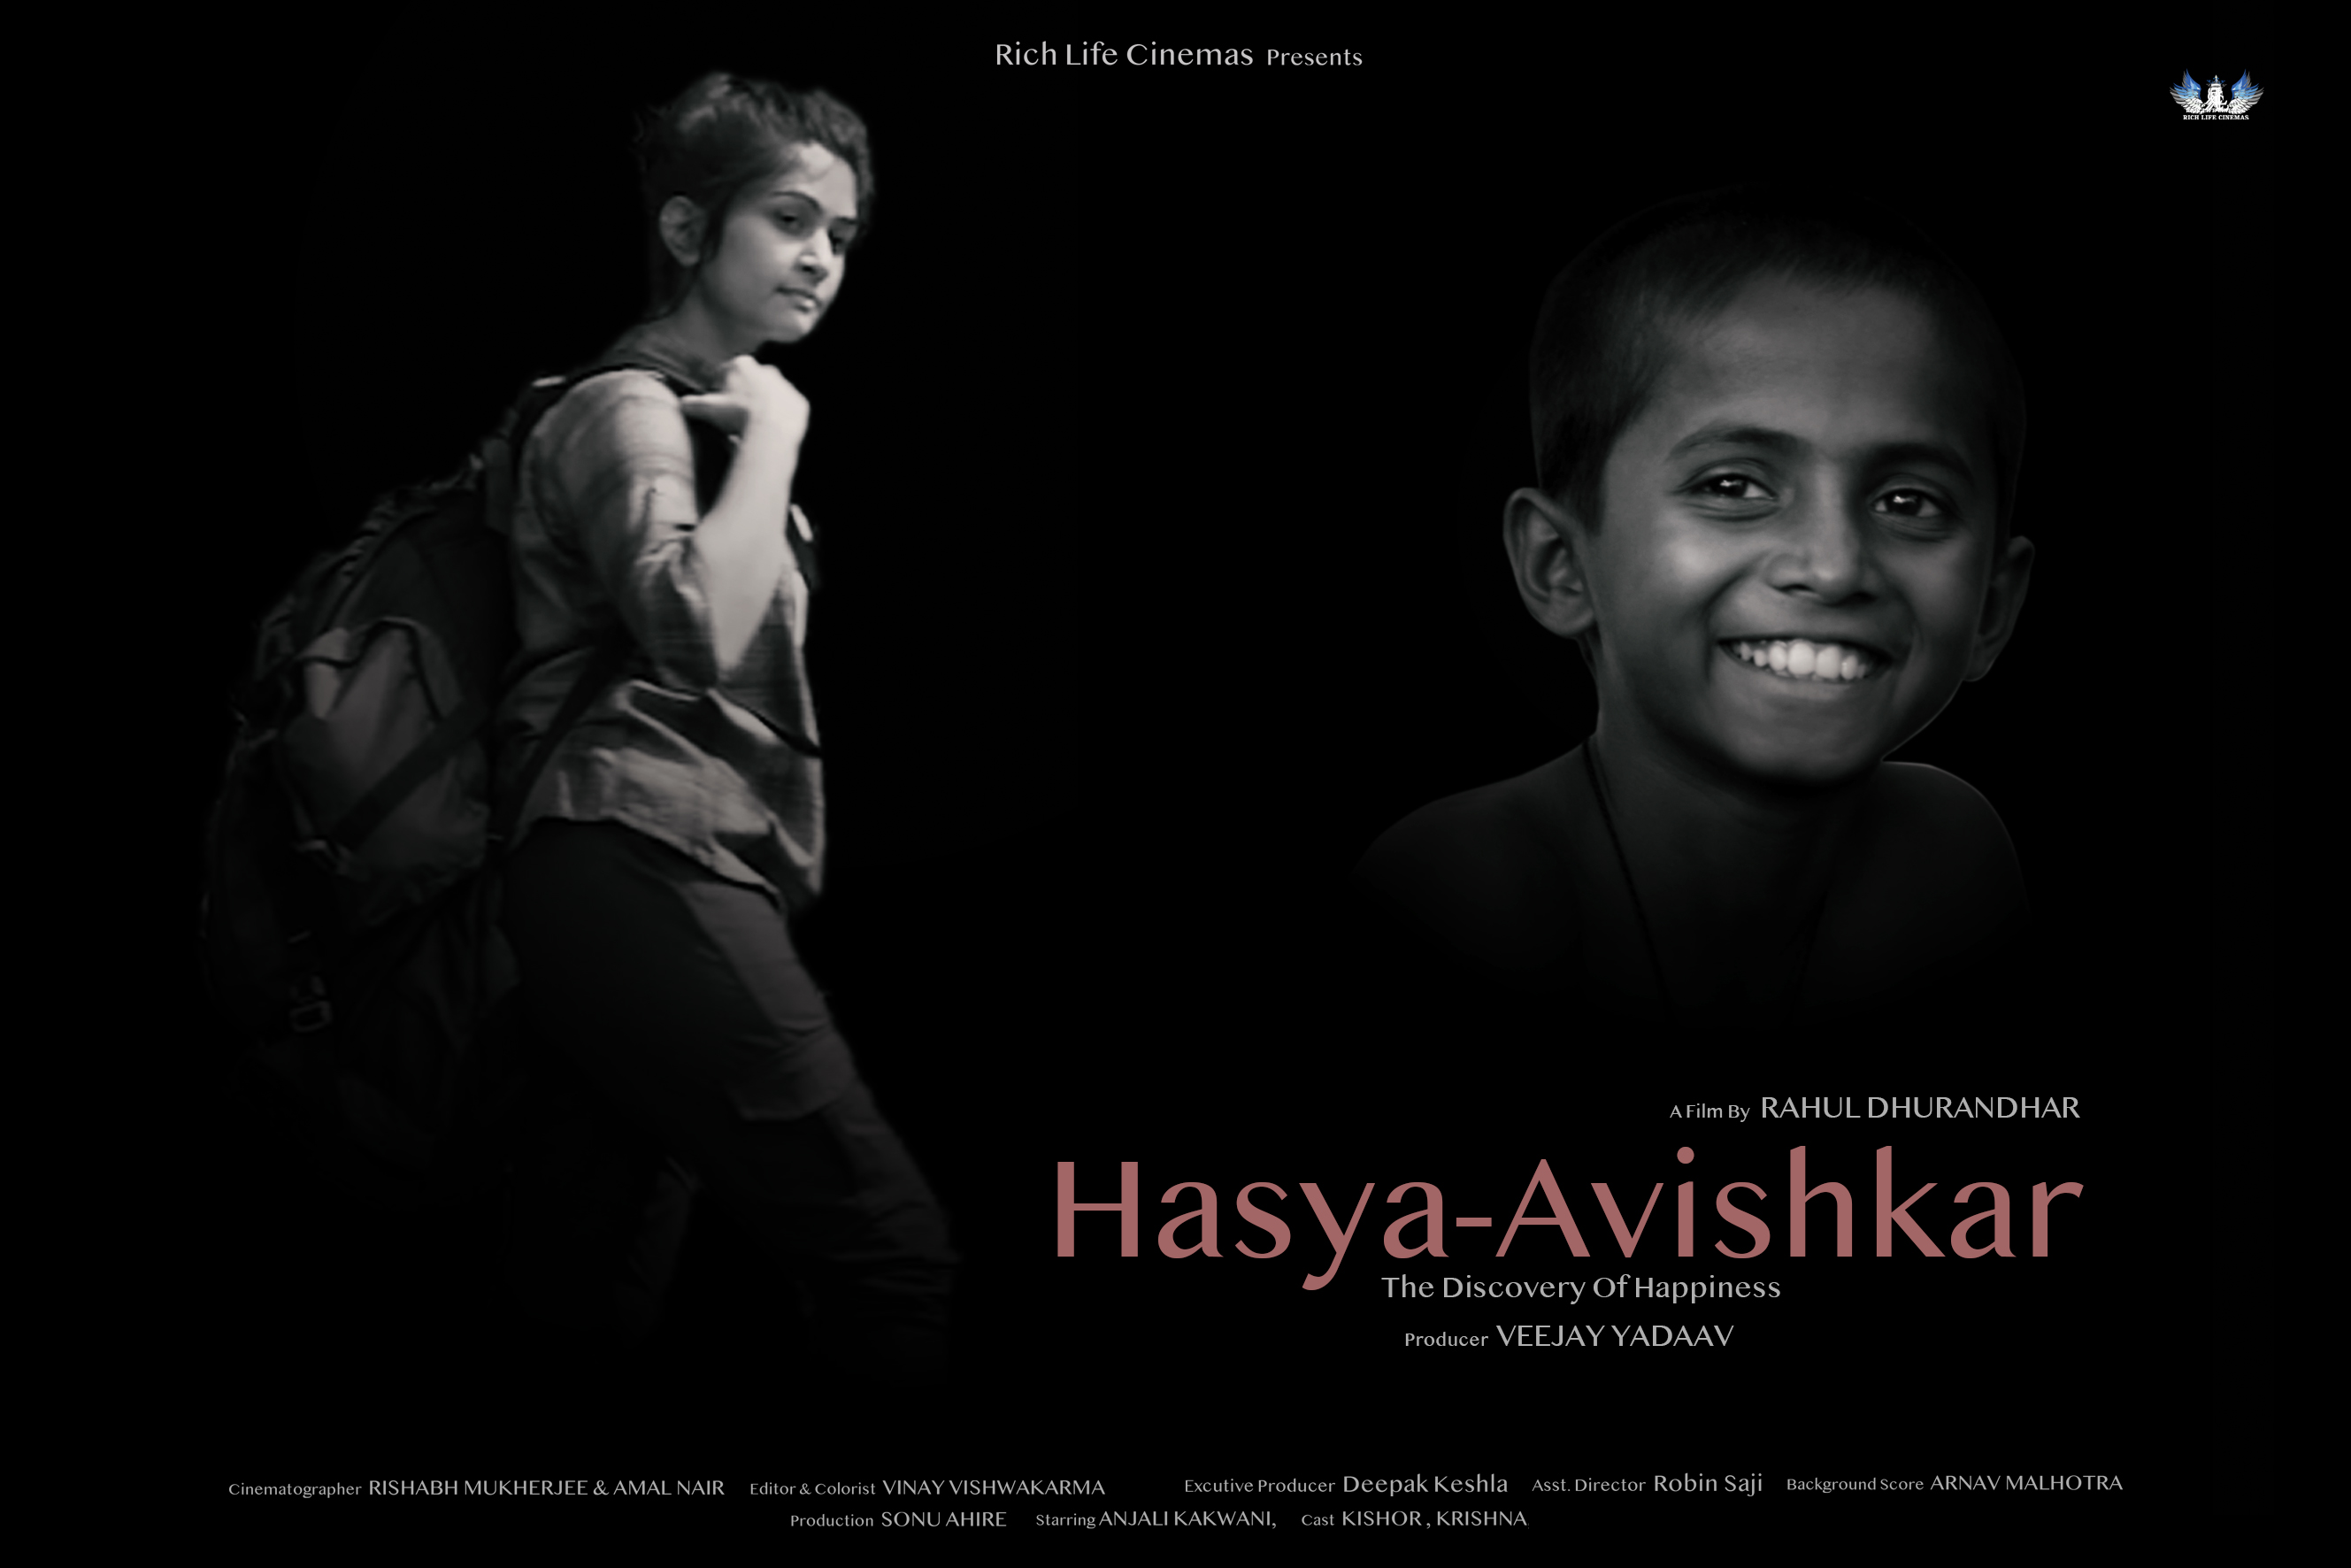 Hasya-Avishkar